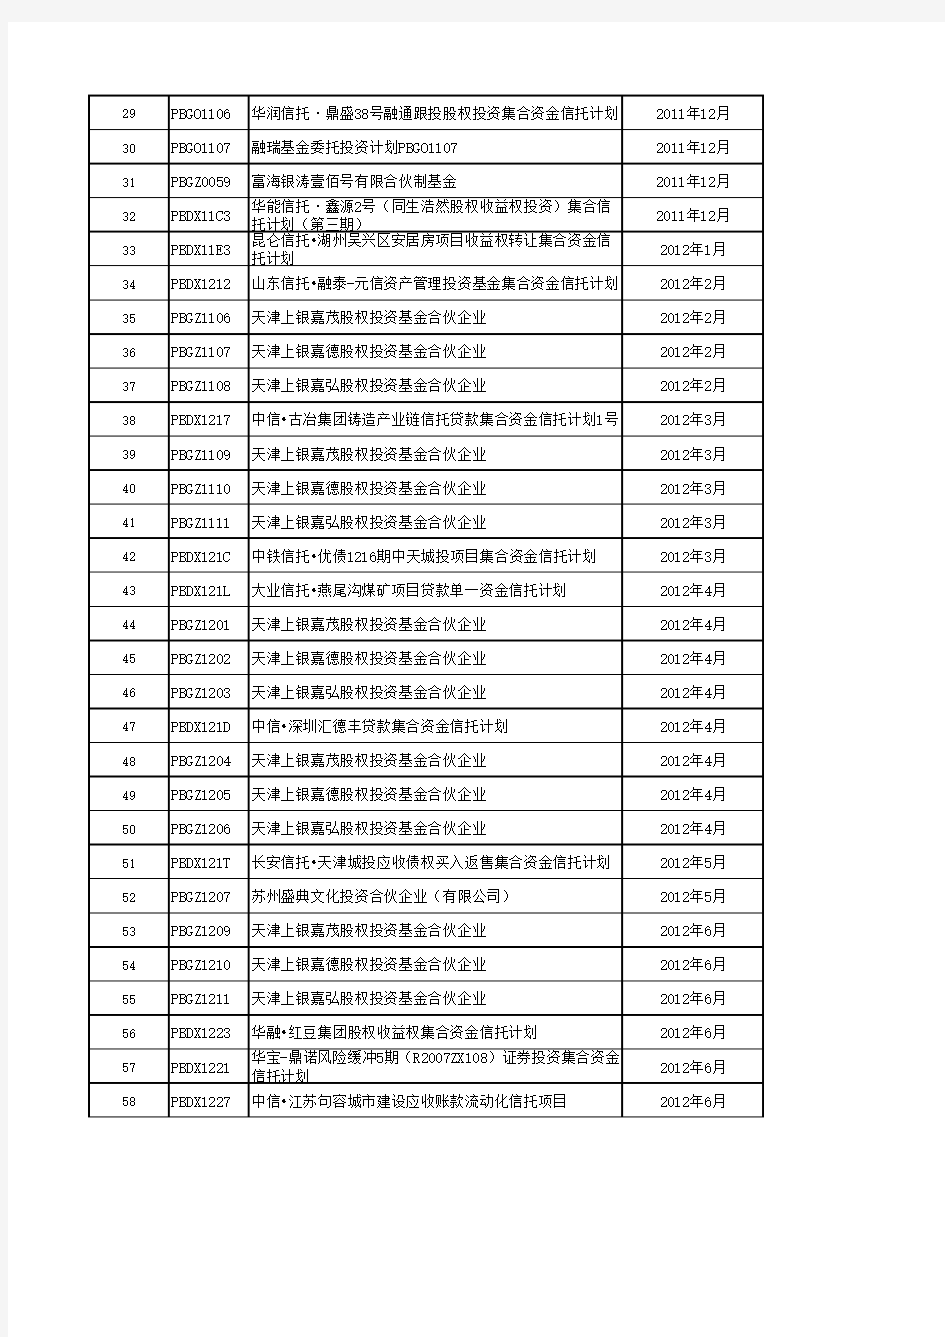 中国工商银行私人银行信托代收付与顾问咨询产品信息表-ICBC